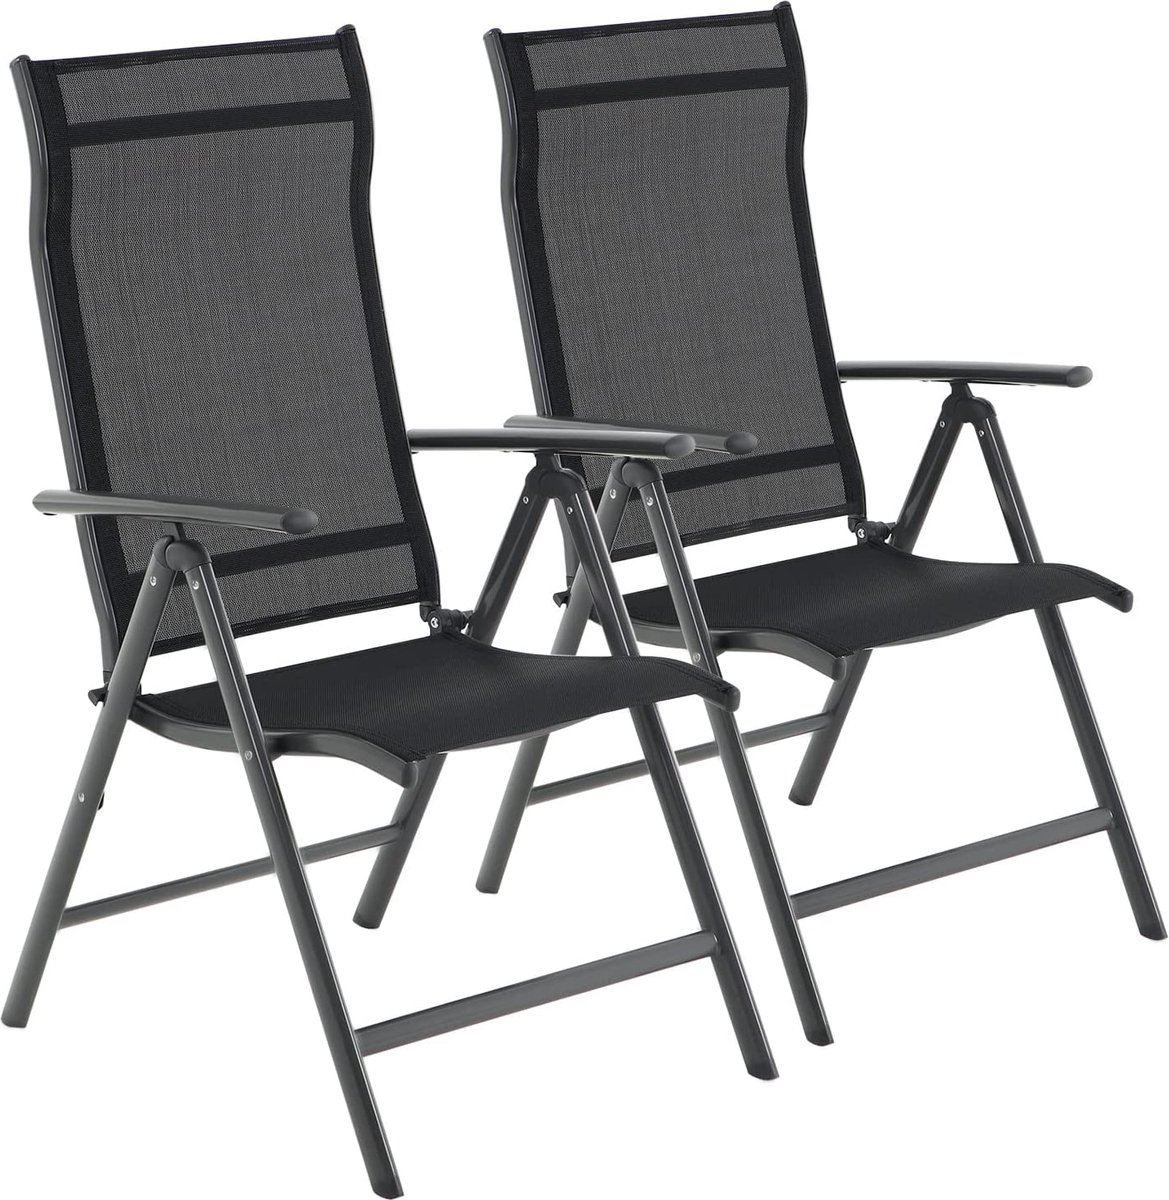 Tuinstoelen - klapstoelen - outdoor stoelen met robuust aluminium frame - rugleuning in 8 standen verstelbaar - tot 150 kg belastbaar - Set van 2